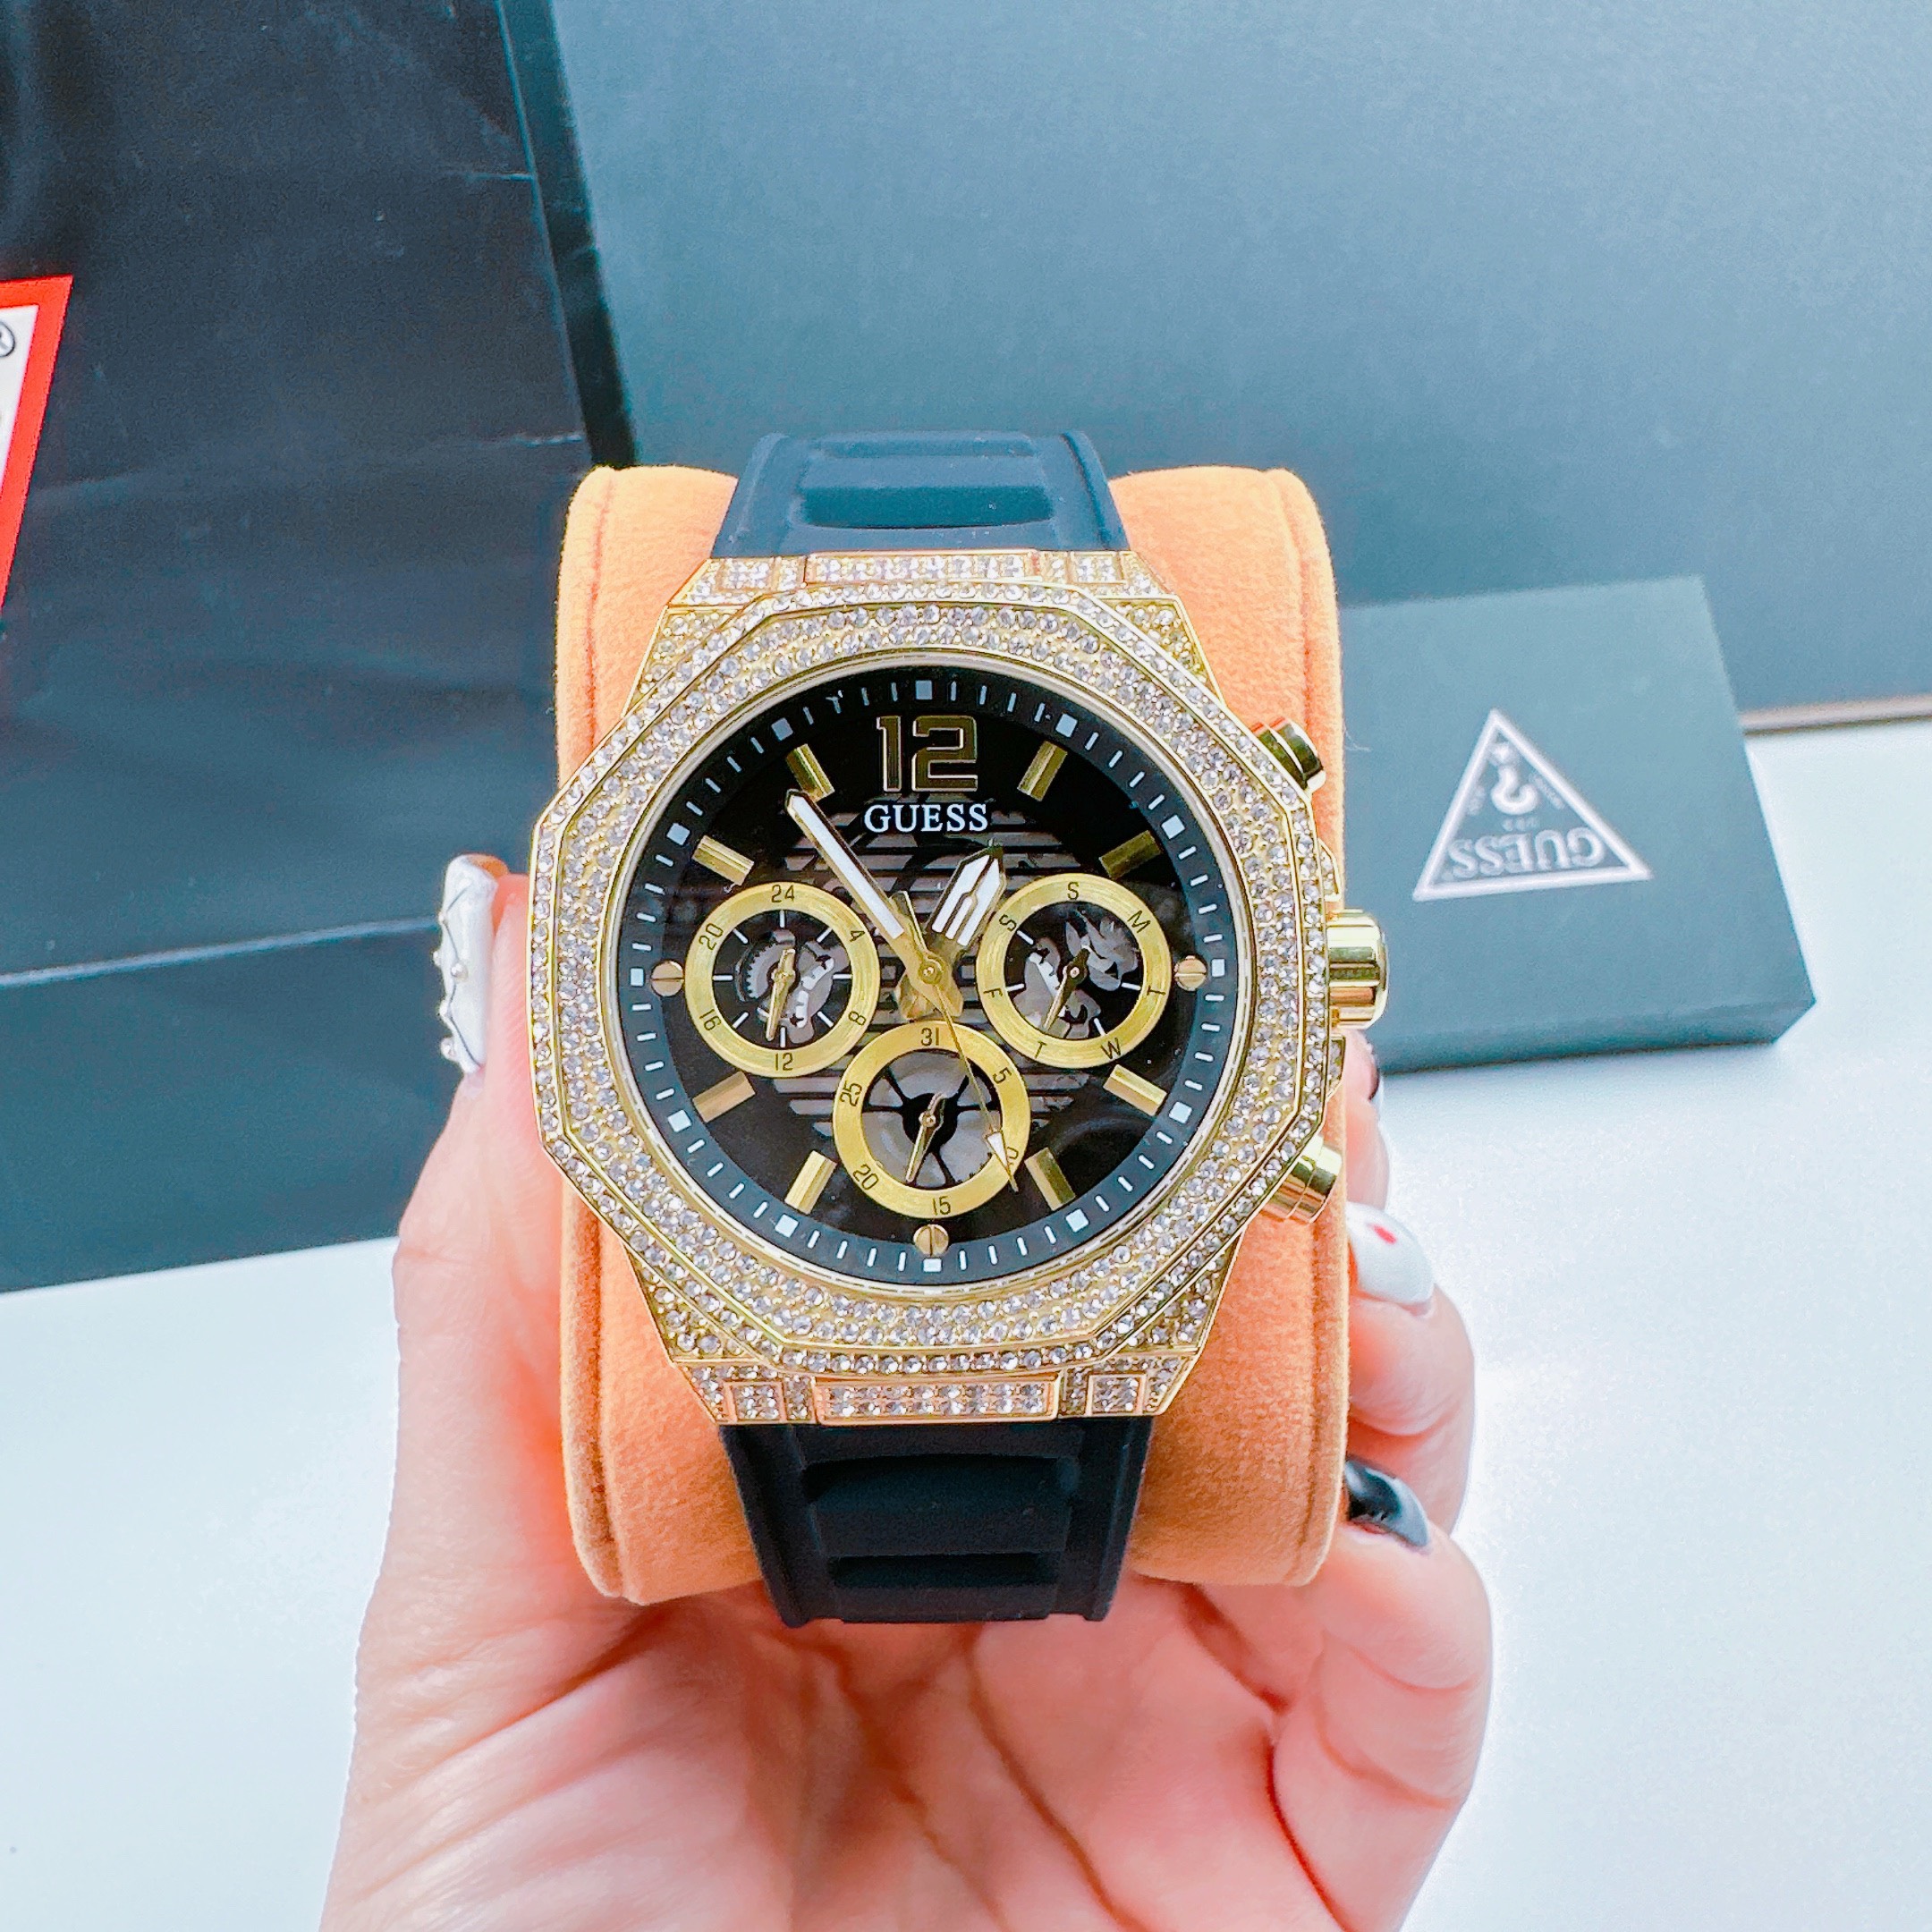 Đồng hồ đeo tay nam dây silicon cao cấp chống nước thể thao Guess GW0518G2 size 44mm fullbox , shop kiwi